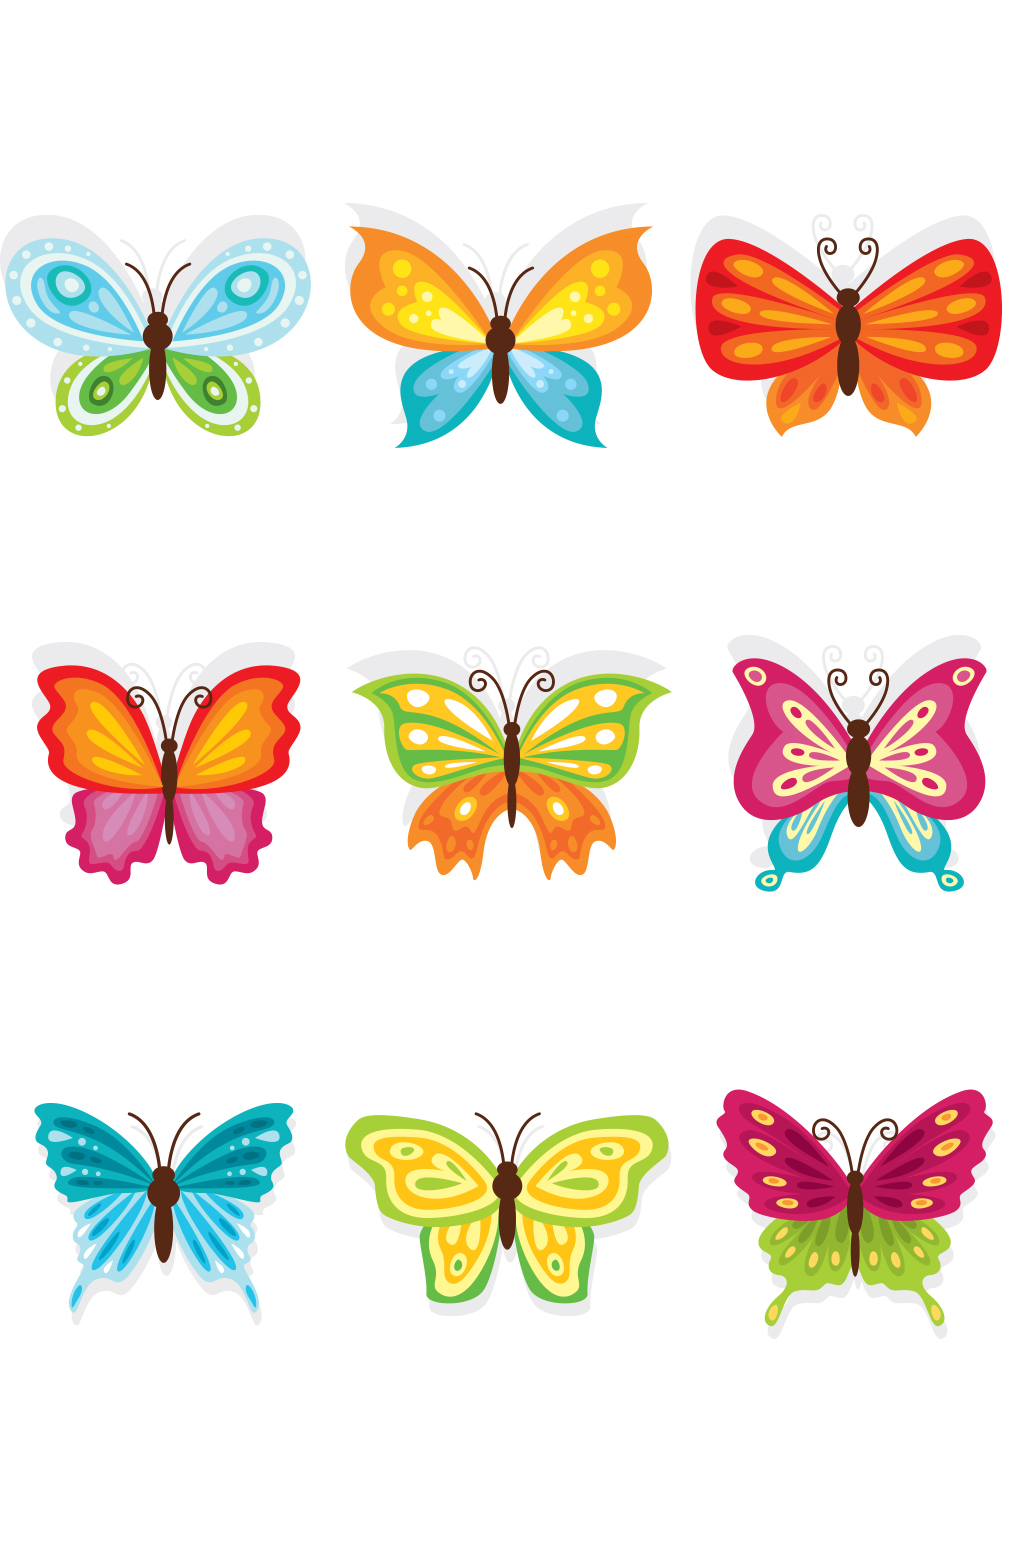 蝴蝶卡通图形图片